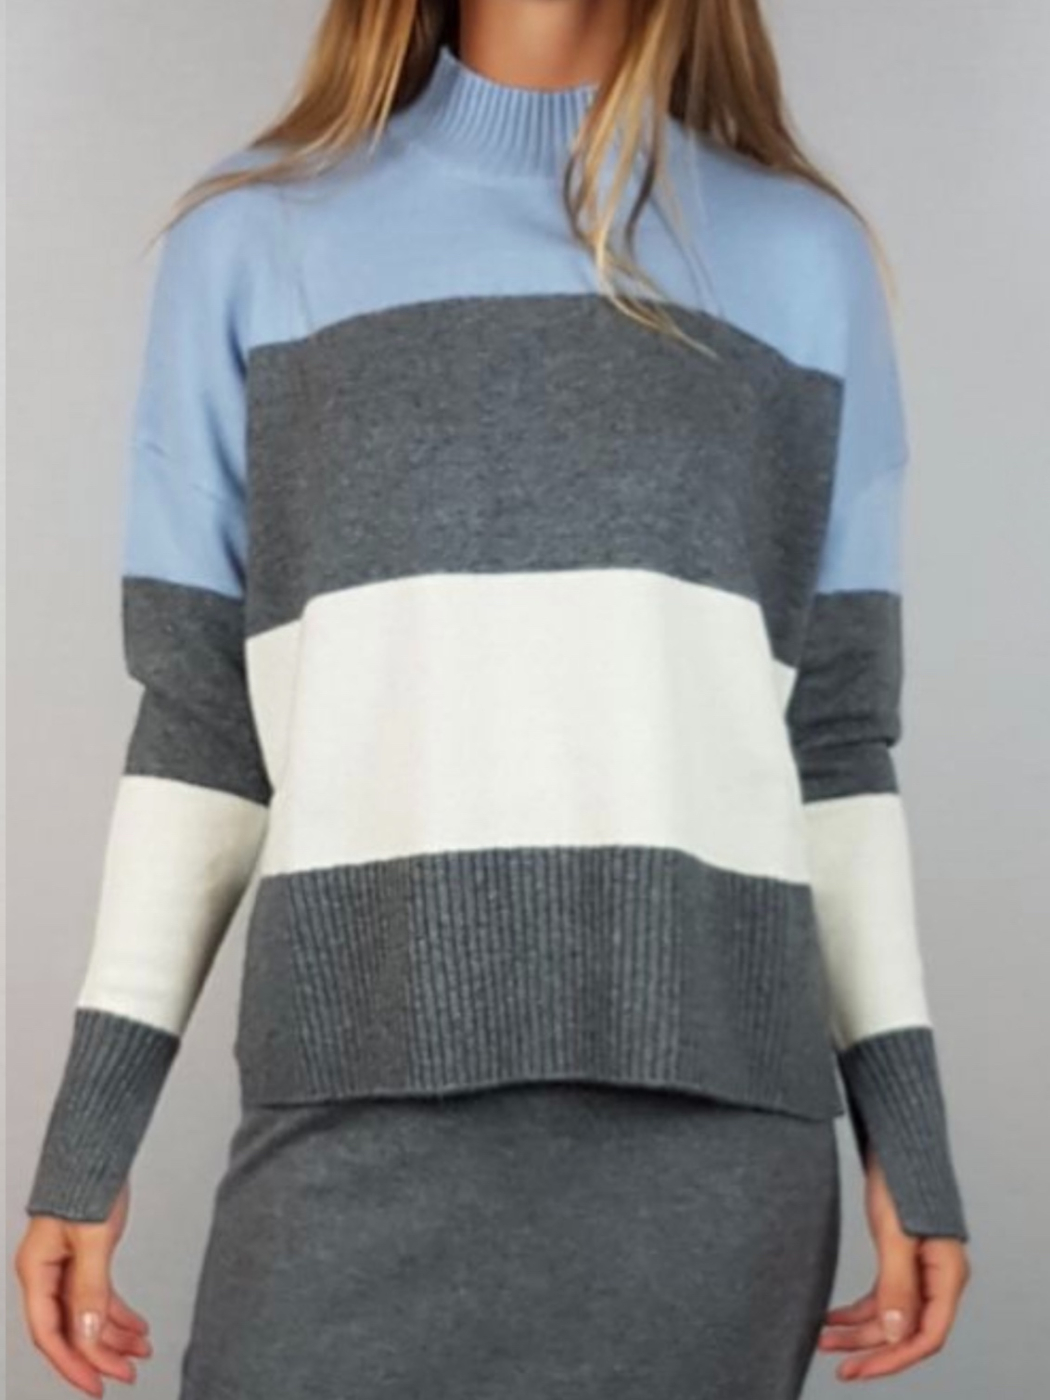 PENNYBLACK jersey de lana y cashmere en rayas  color gris, con manga ranglán